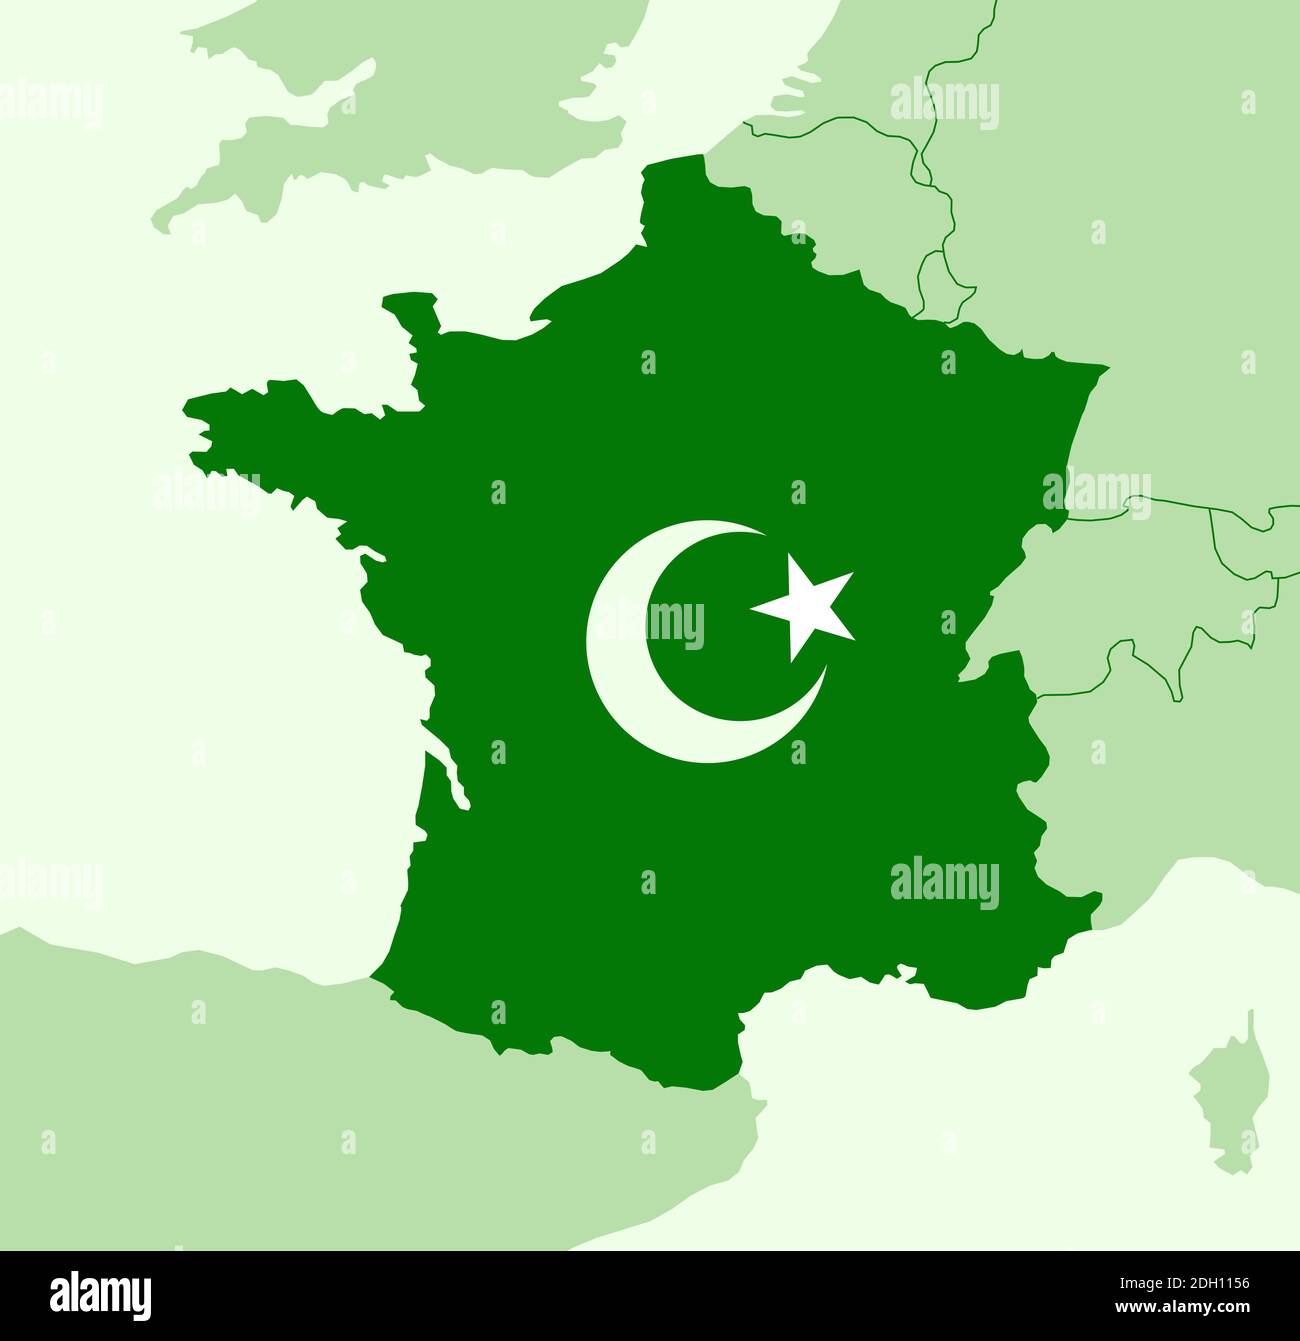 Islam e religione islamica in Francia - musulmani nel paese. Religione e credenti nello Stato europeo. Illustrazione vettoriale Foto Stock